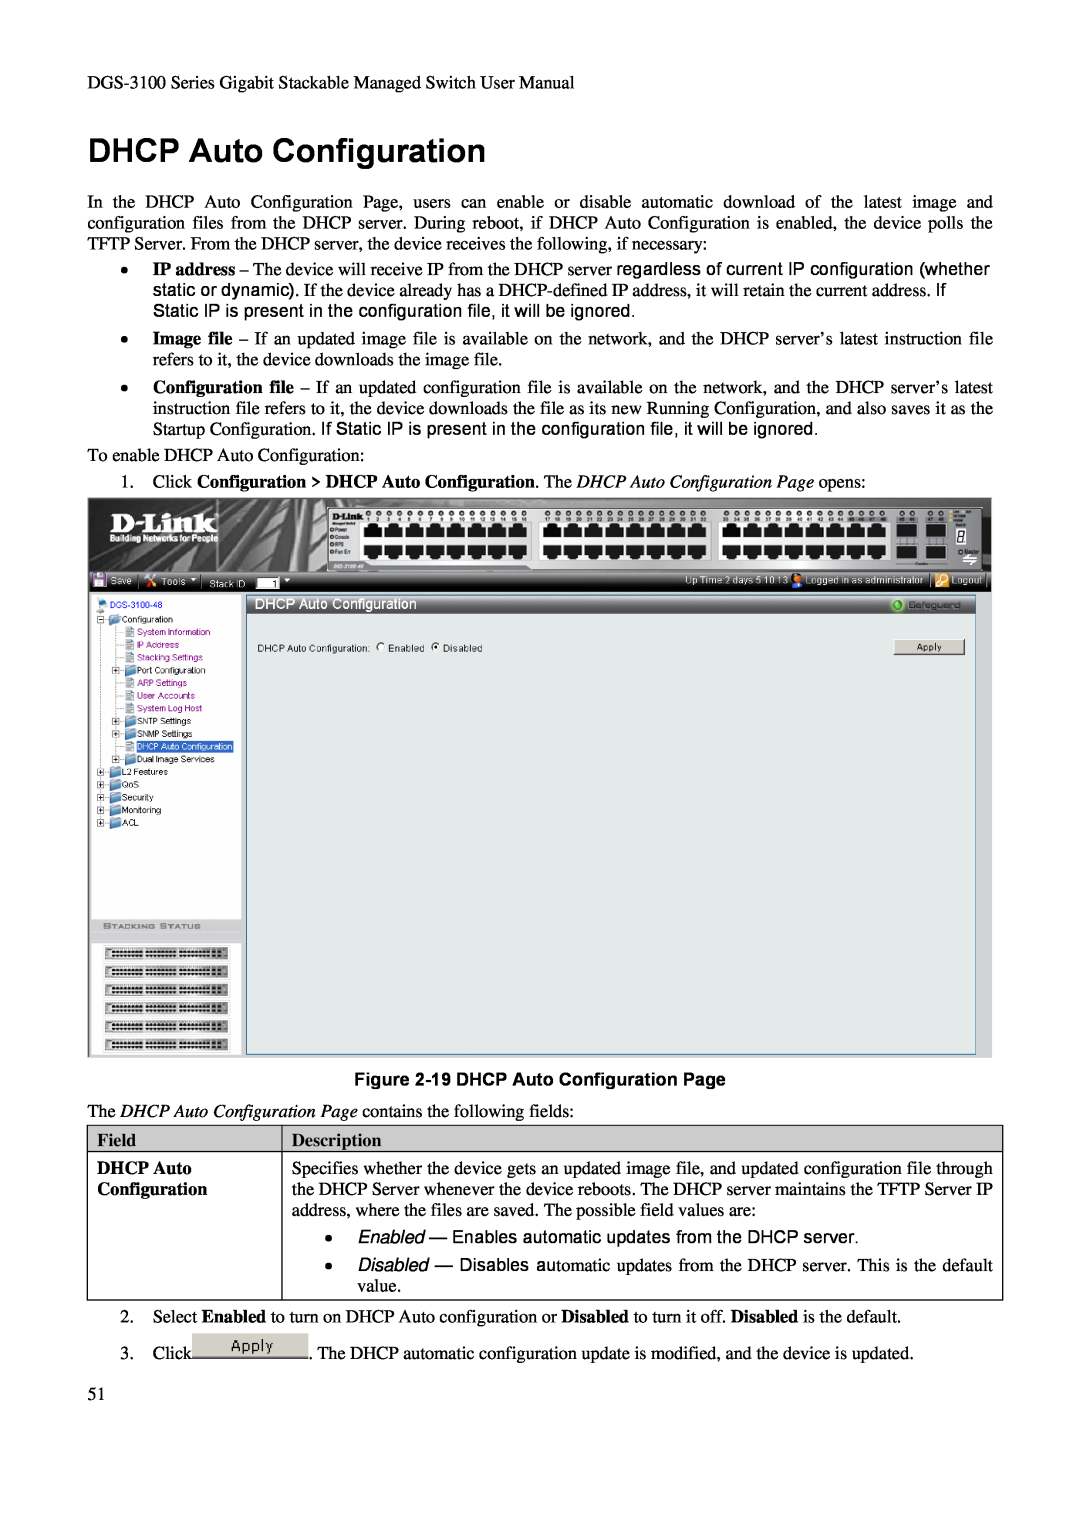 D-Link DGS-3100 user manual 19 DHCP Auto Configuration Page, Field DHCP Auto Configuration, Description 